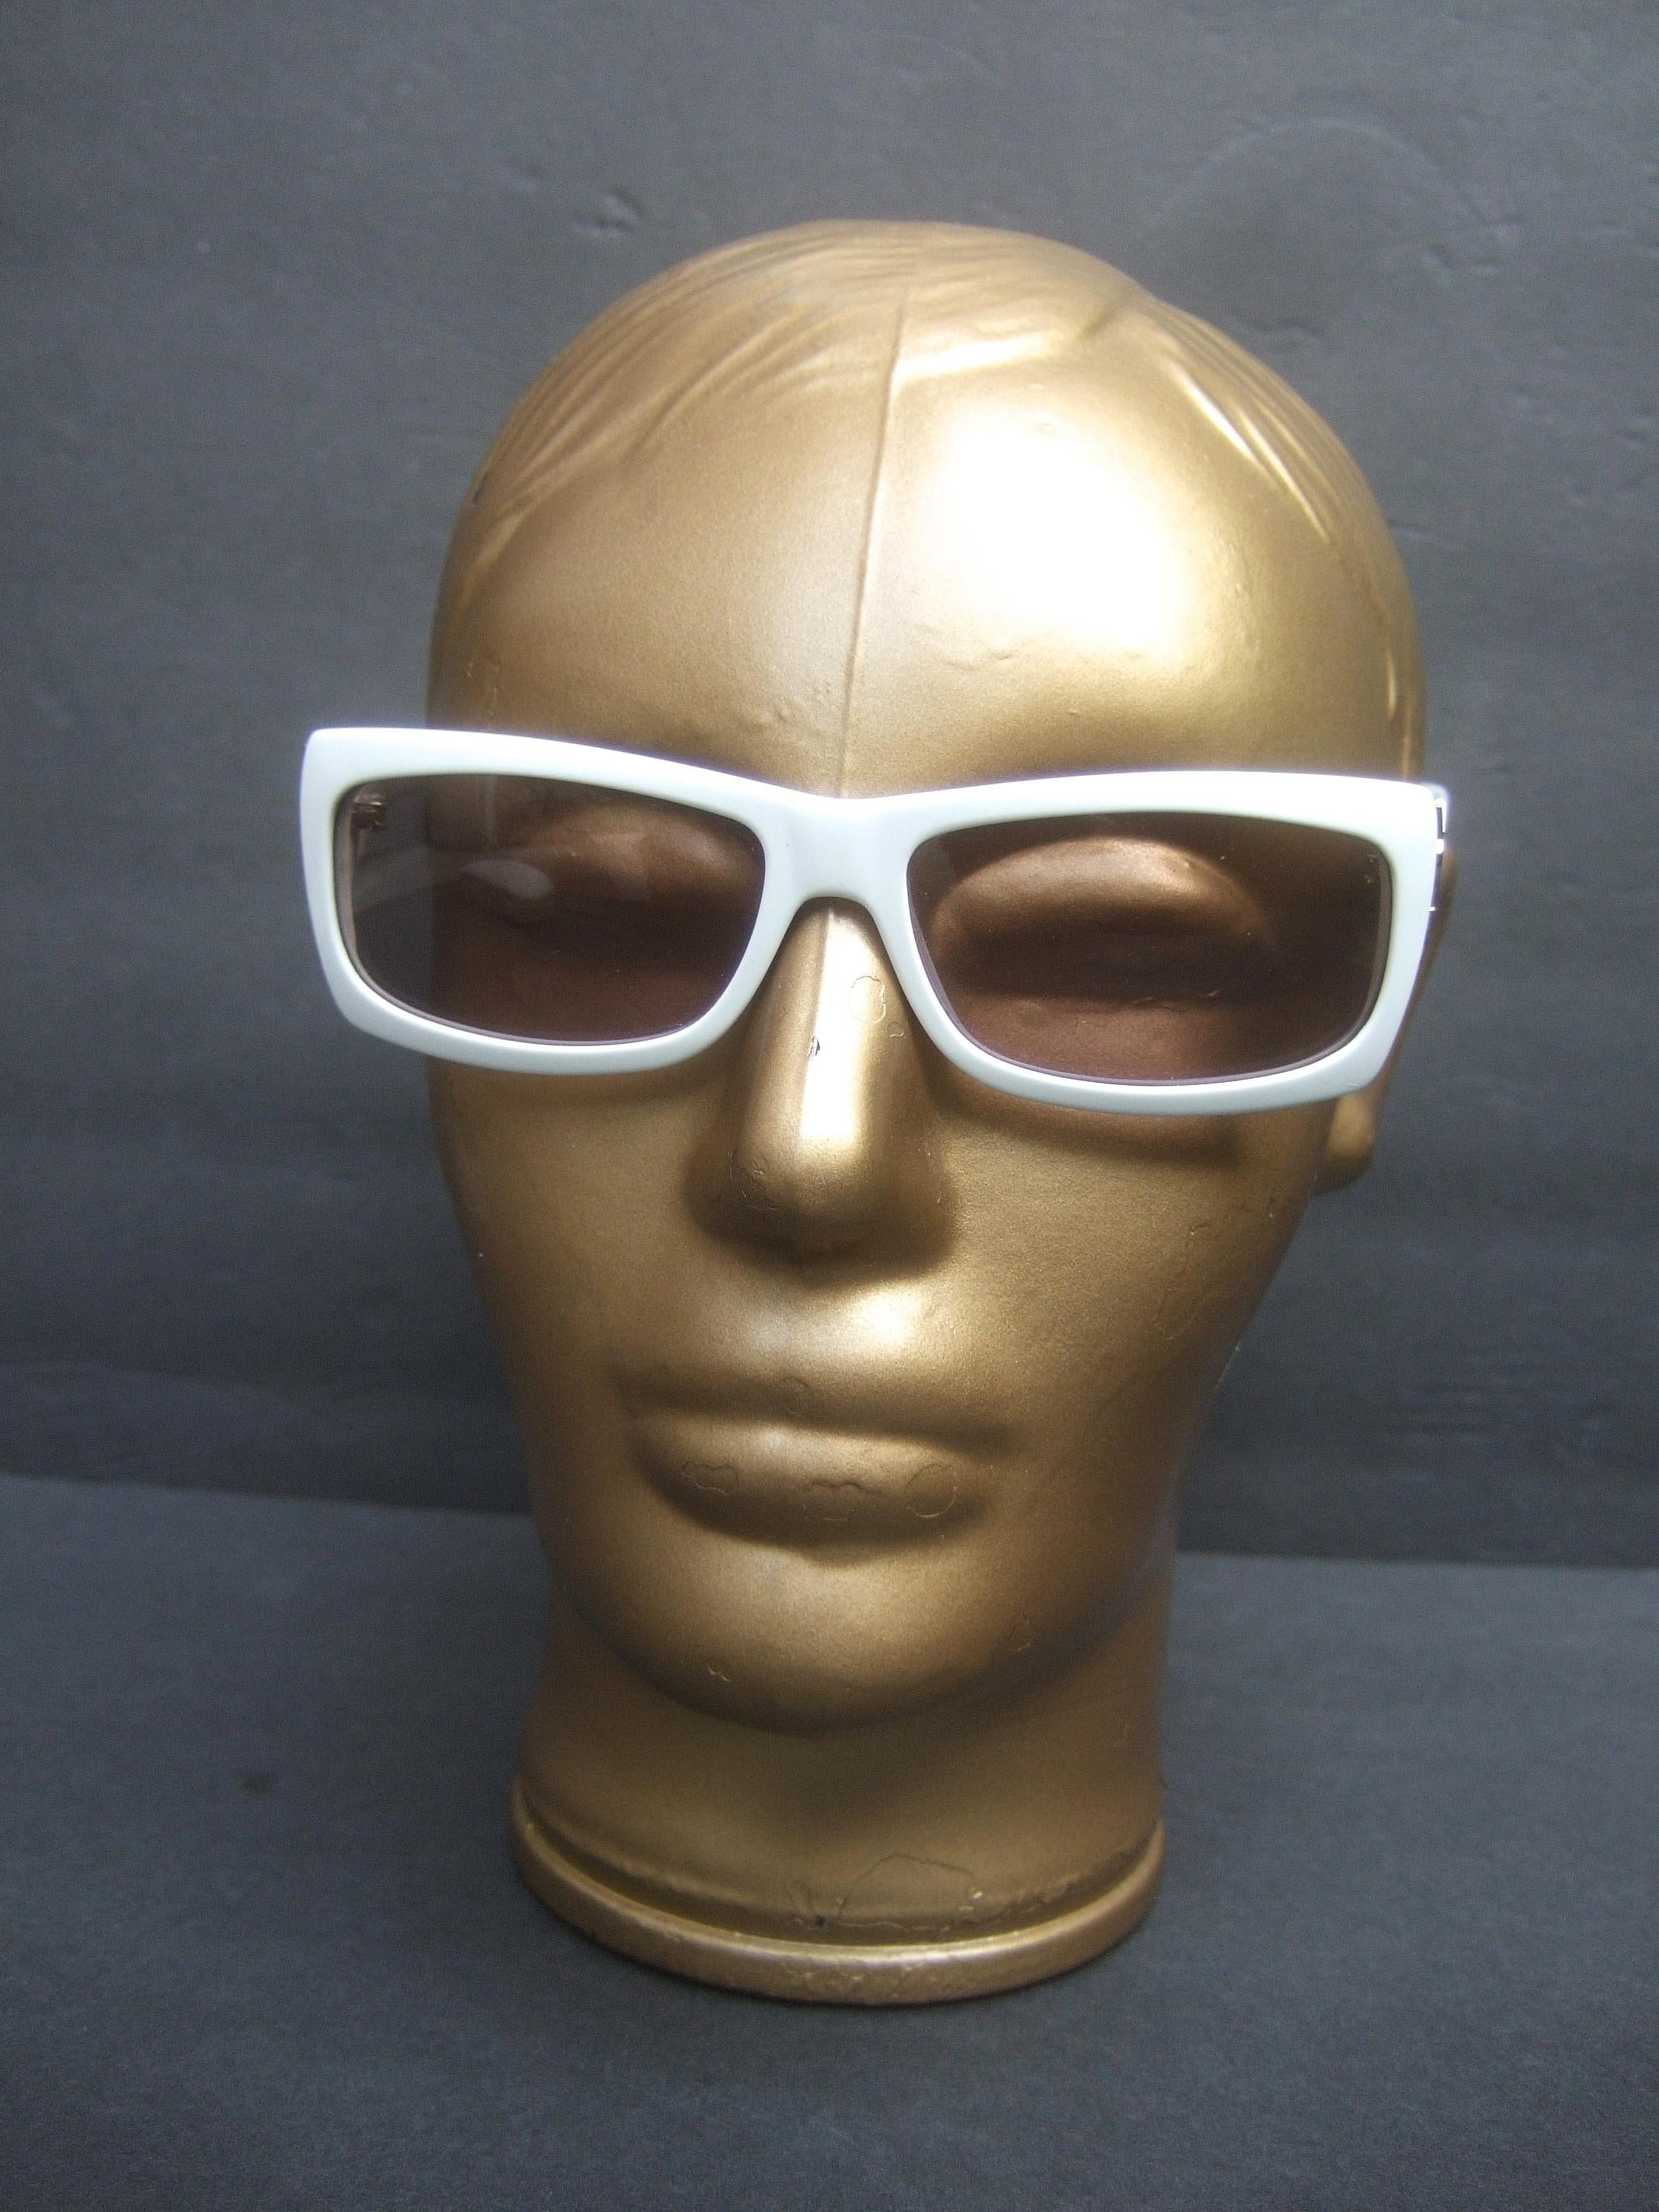 Yves Saint Laurent Italian White Plastic Frame Sunglasses in YSL Case c 1990s 1